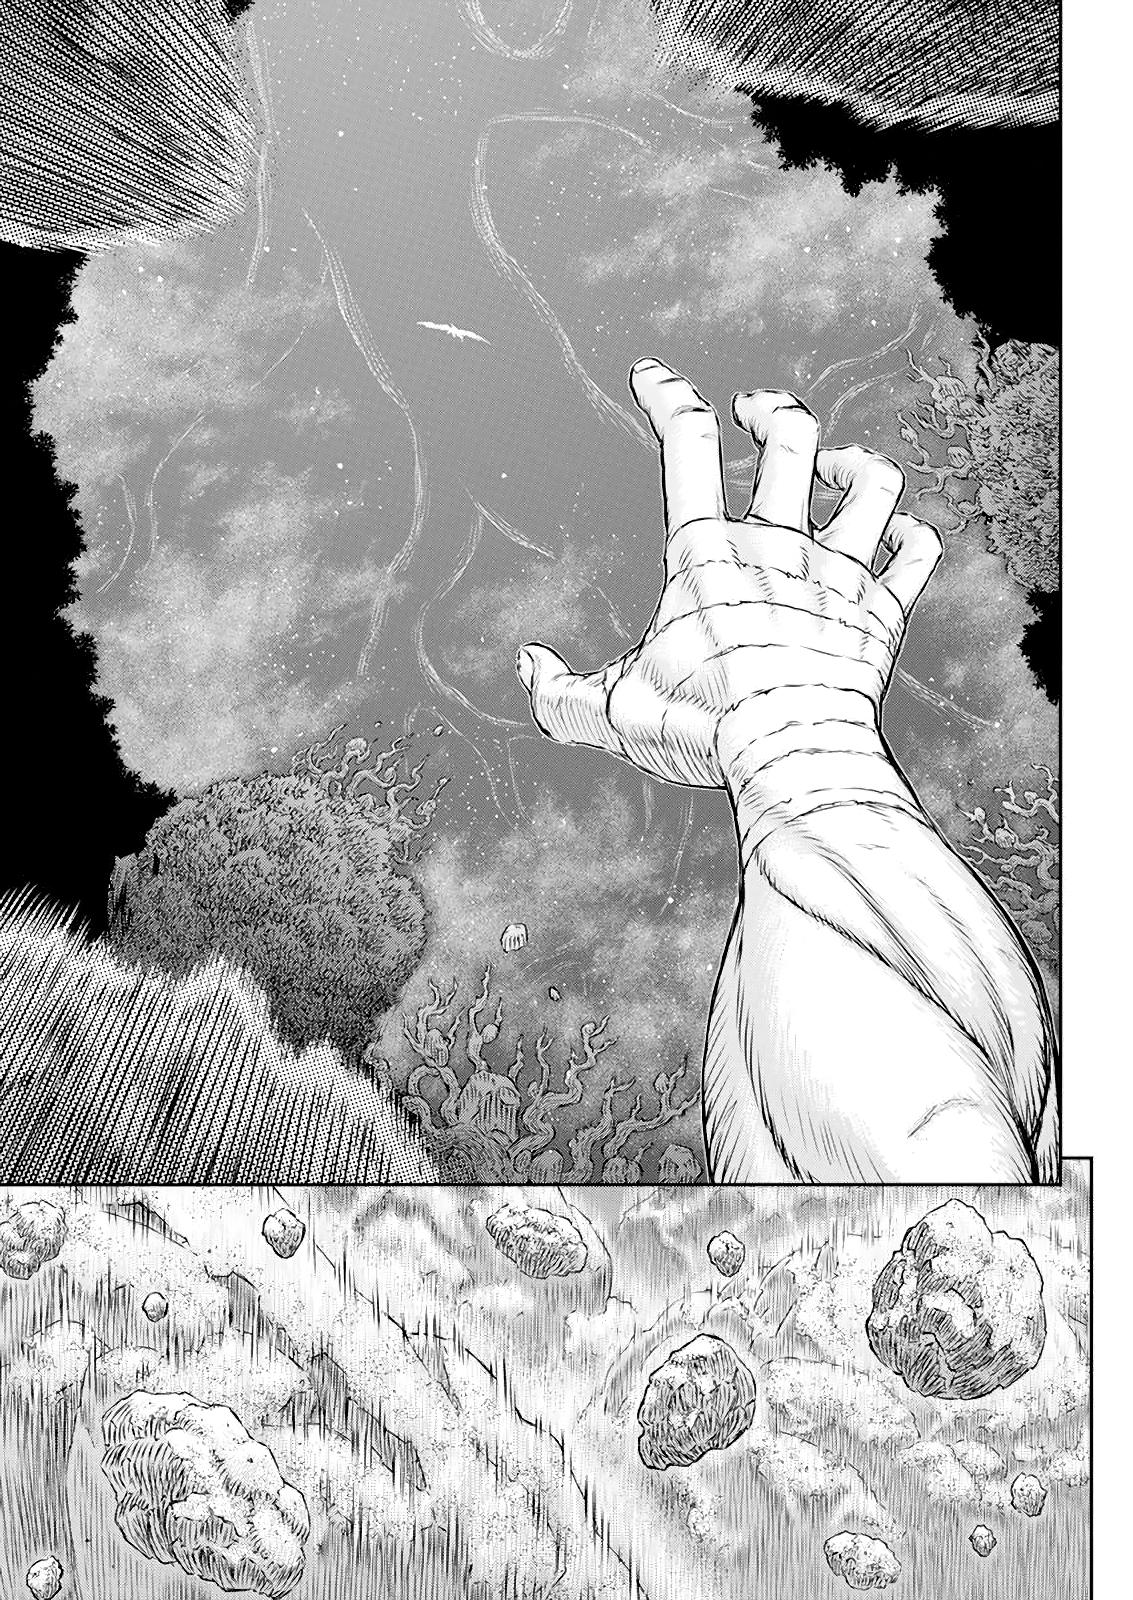 Berserk Manga Chapter 368 image 18